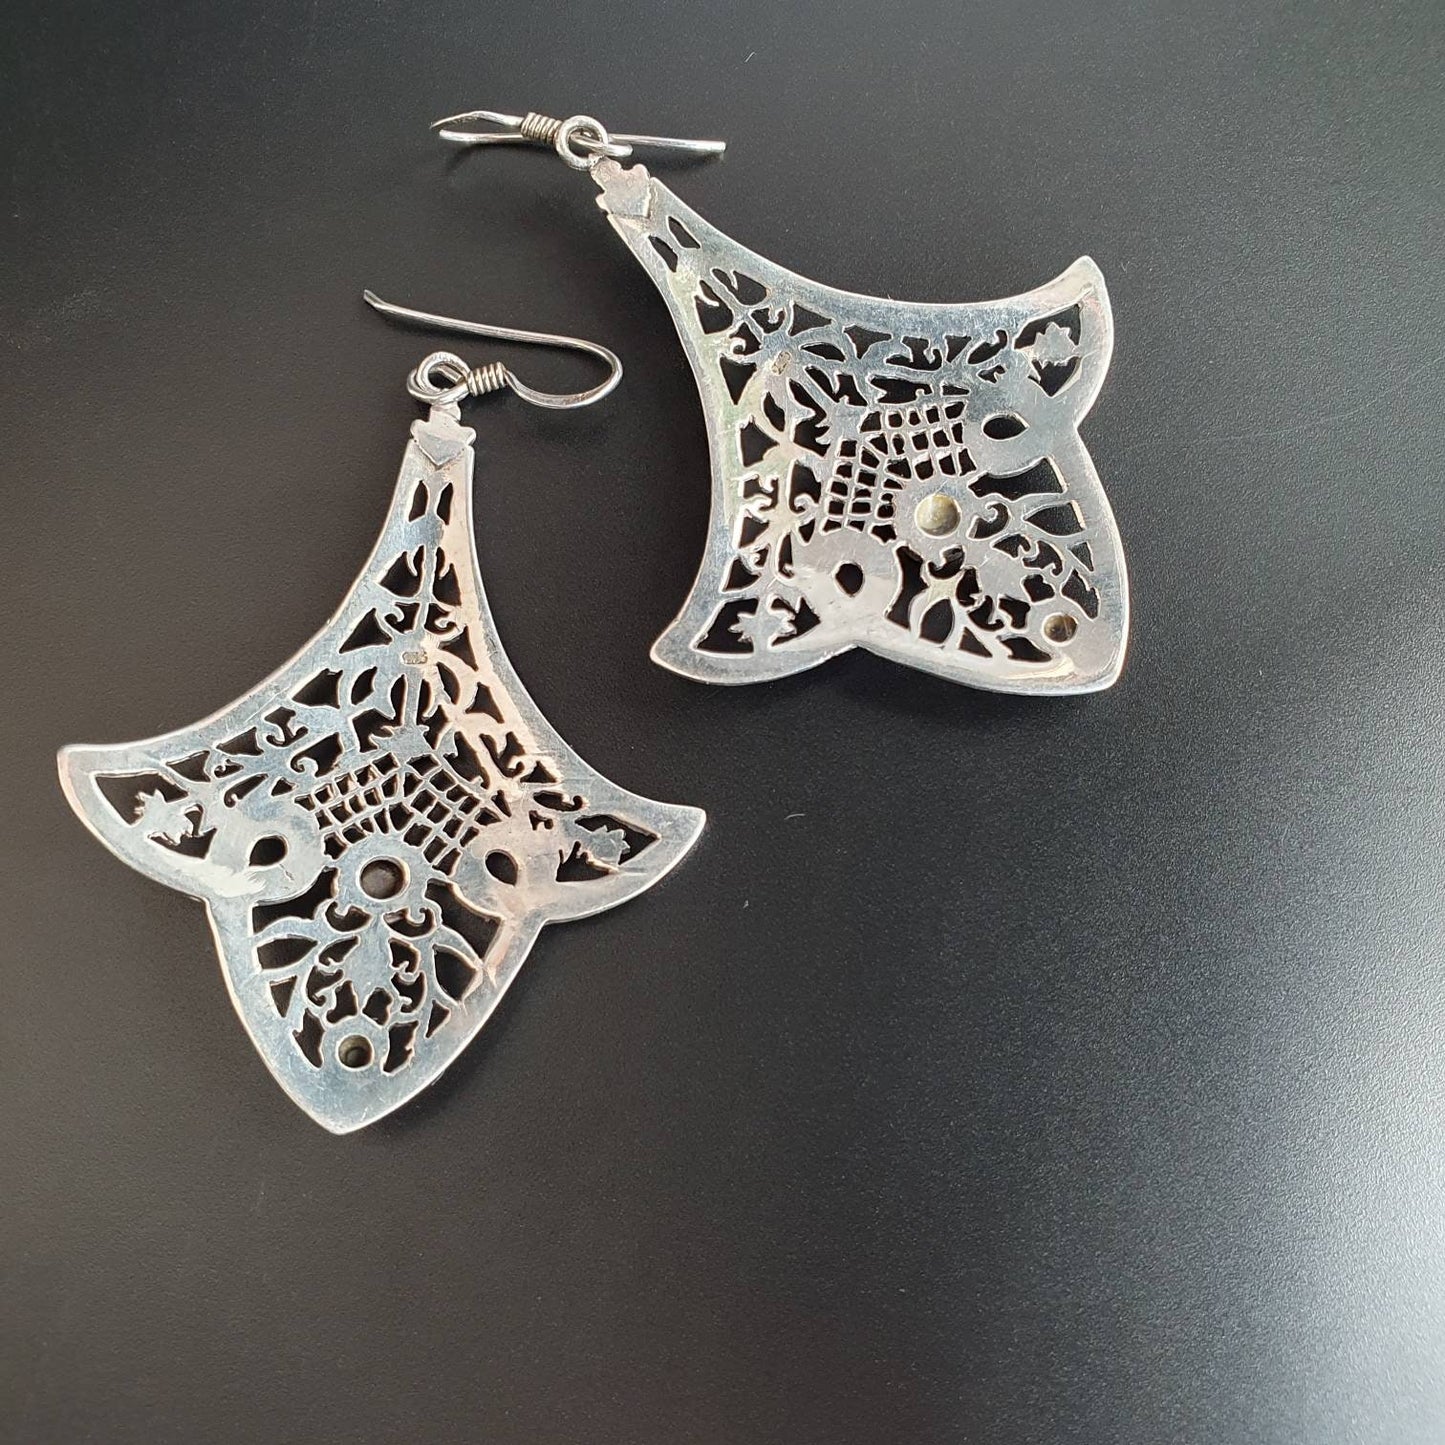 Ethnic Earrings - Silver Ethnic Dangle Earrings - Bohemian Earrings - Boho Earrings - Silver Chandelier Earrings - Black onyx gemstones 925